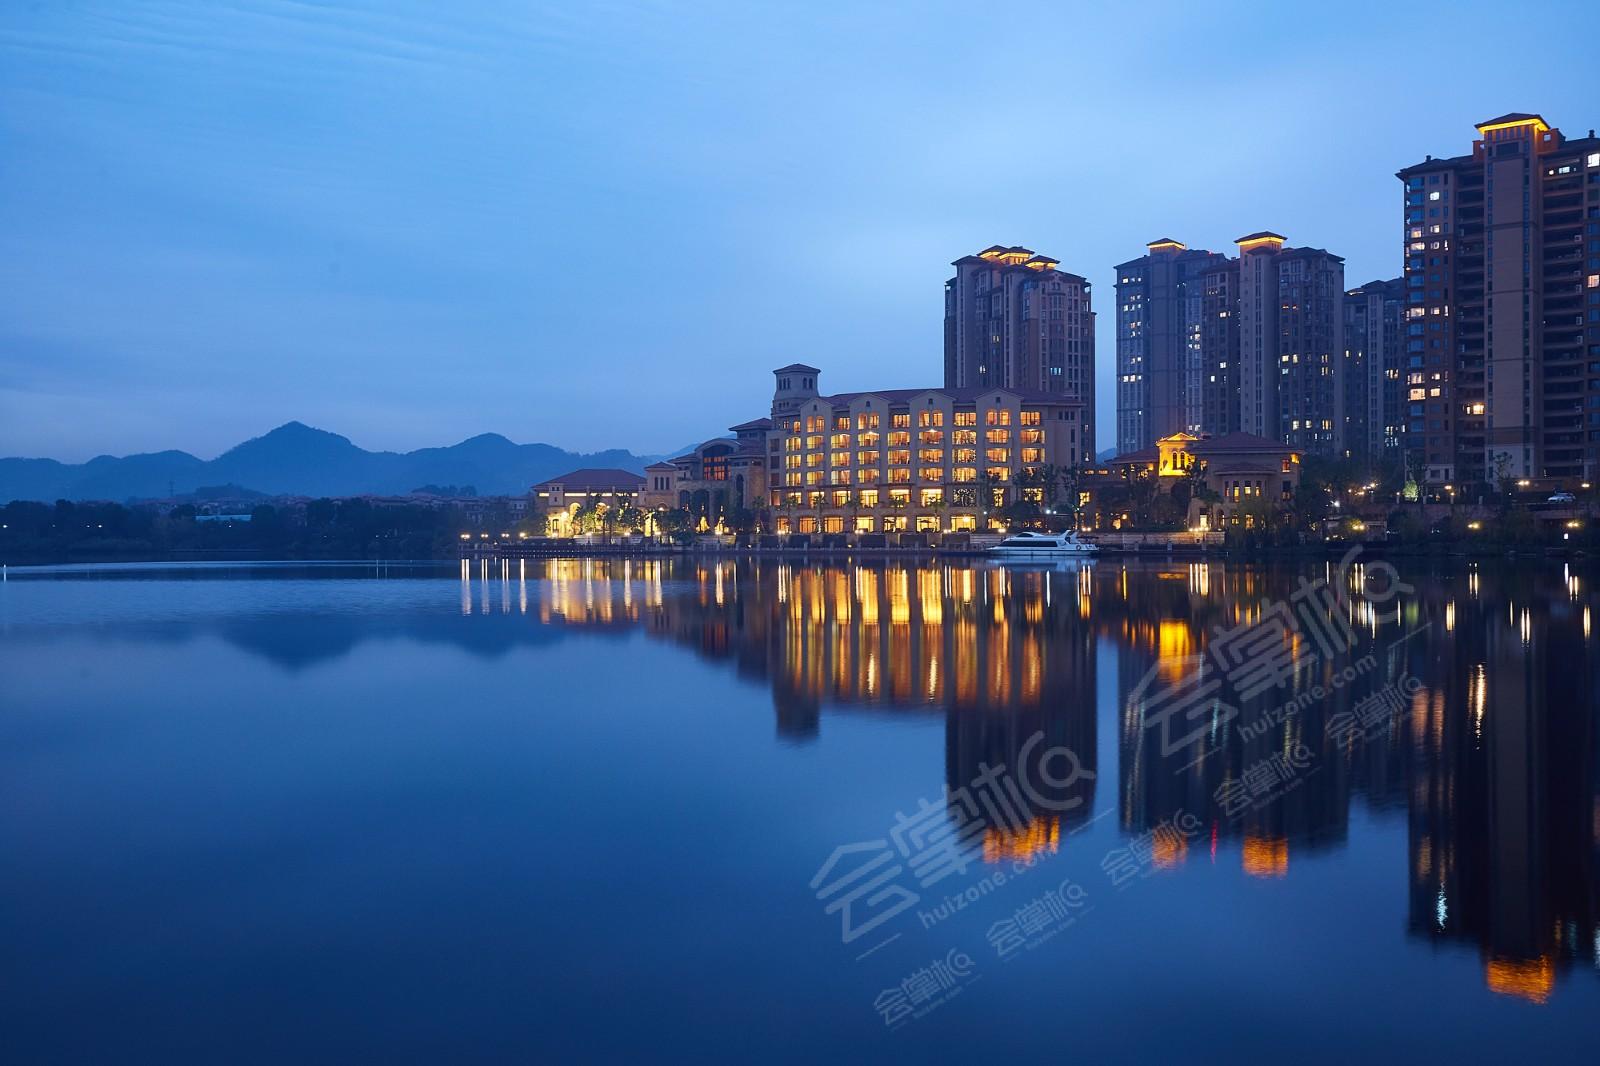 杭州五星级酒店最大容纳700人的会议场地|杭州东海闲湖城·黄龙饭店的价格与联系方式